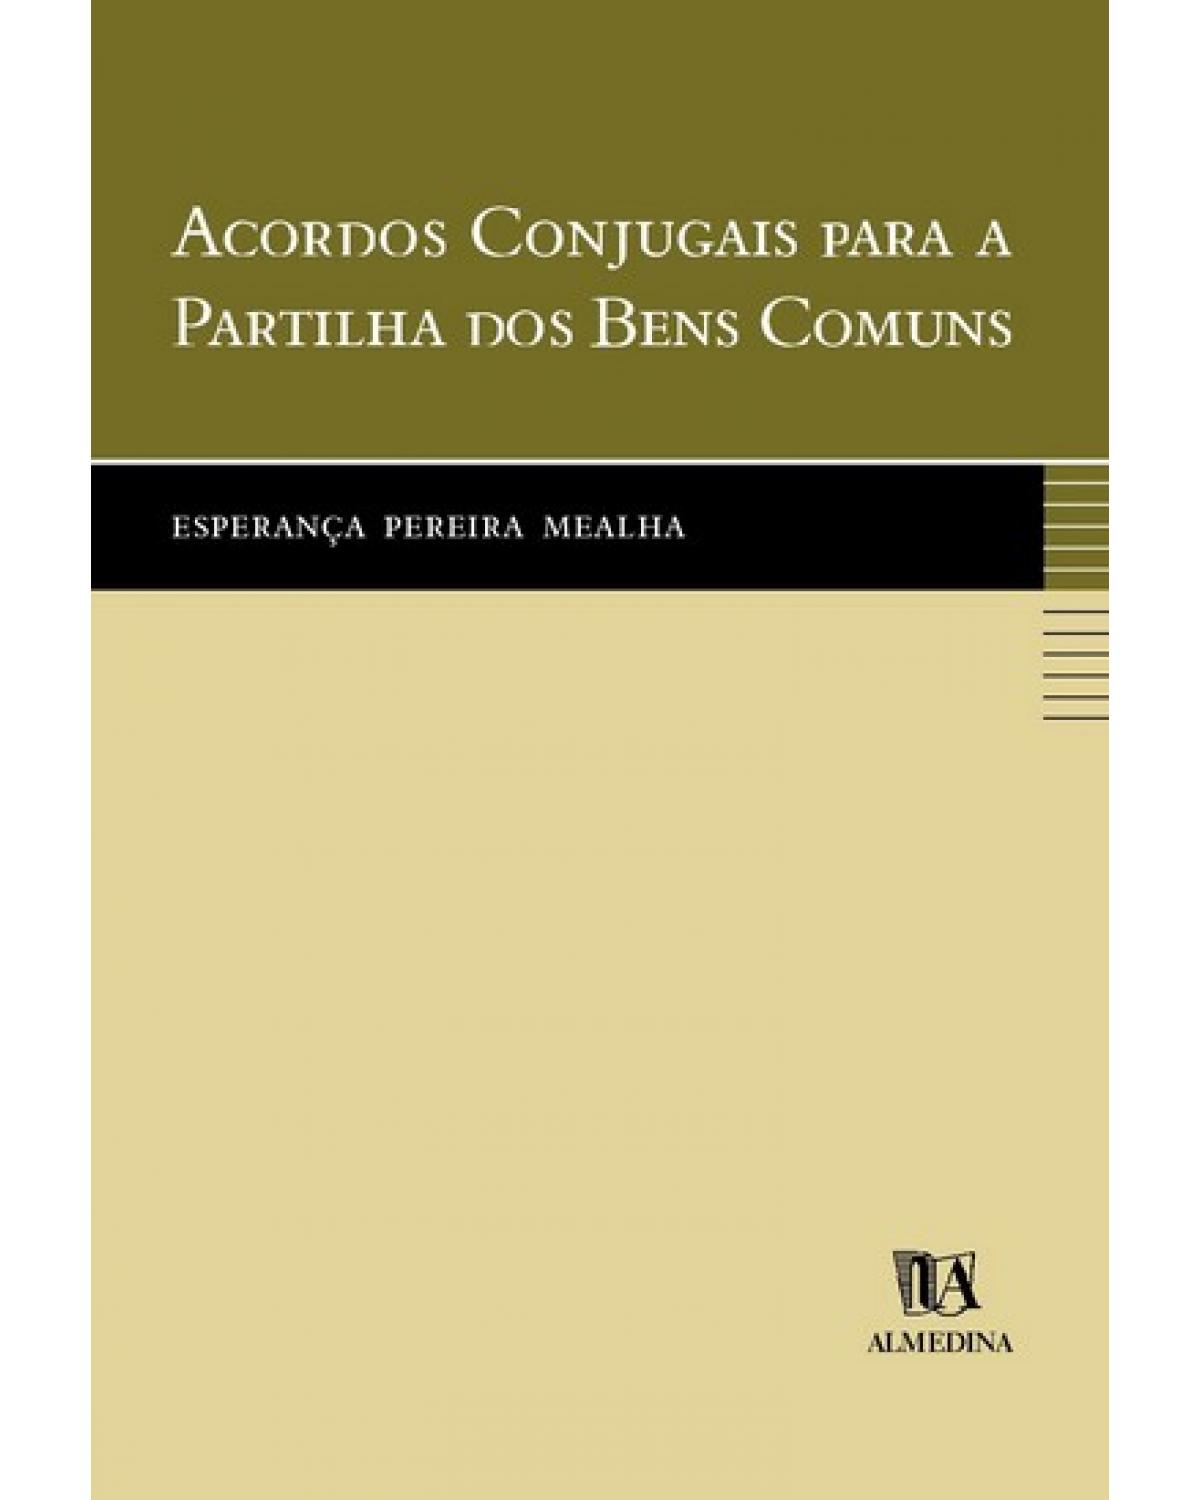 Acordos conjugais para a partilha dos bens comuns - 1ª Edição | 2005